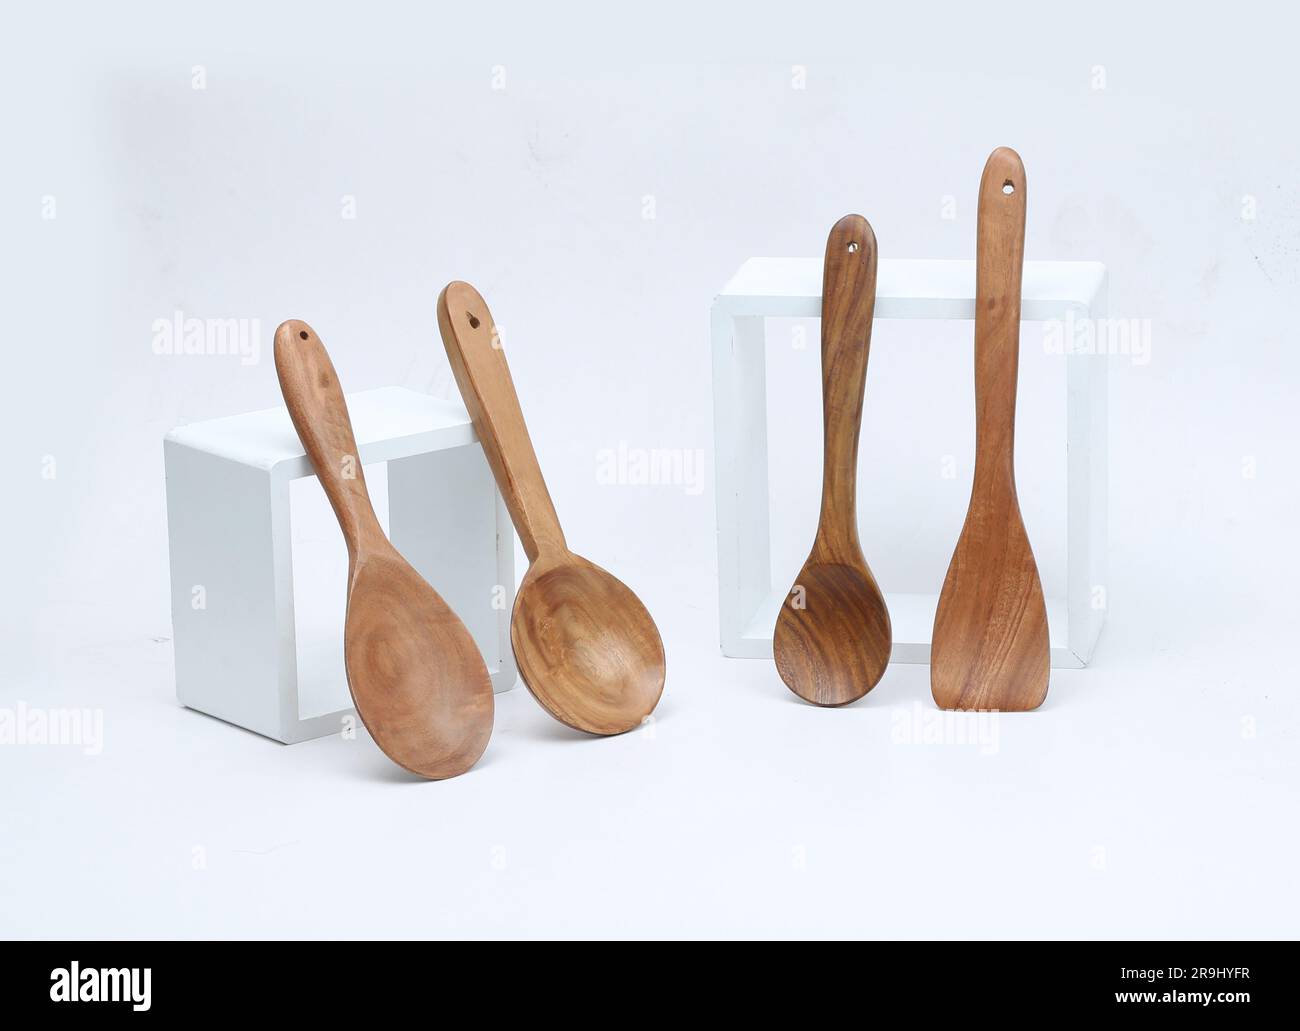 Cucchiai in legno per cucinare, utensili da cucina in legno isolati su sfondo bianco Foto Stock